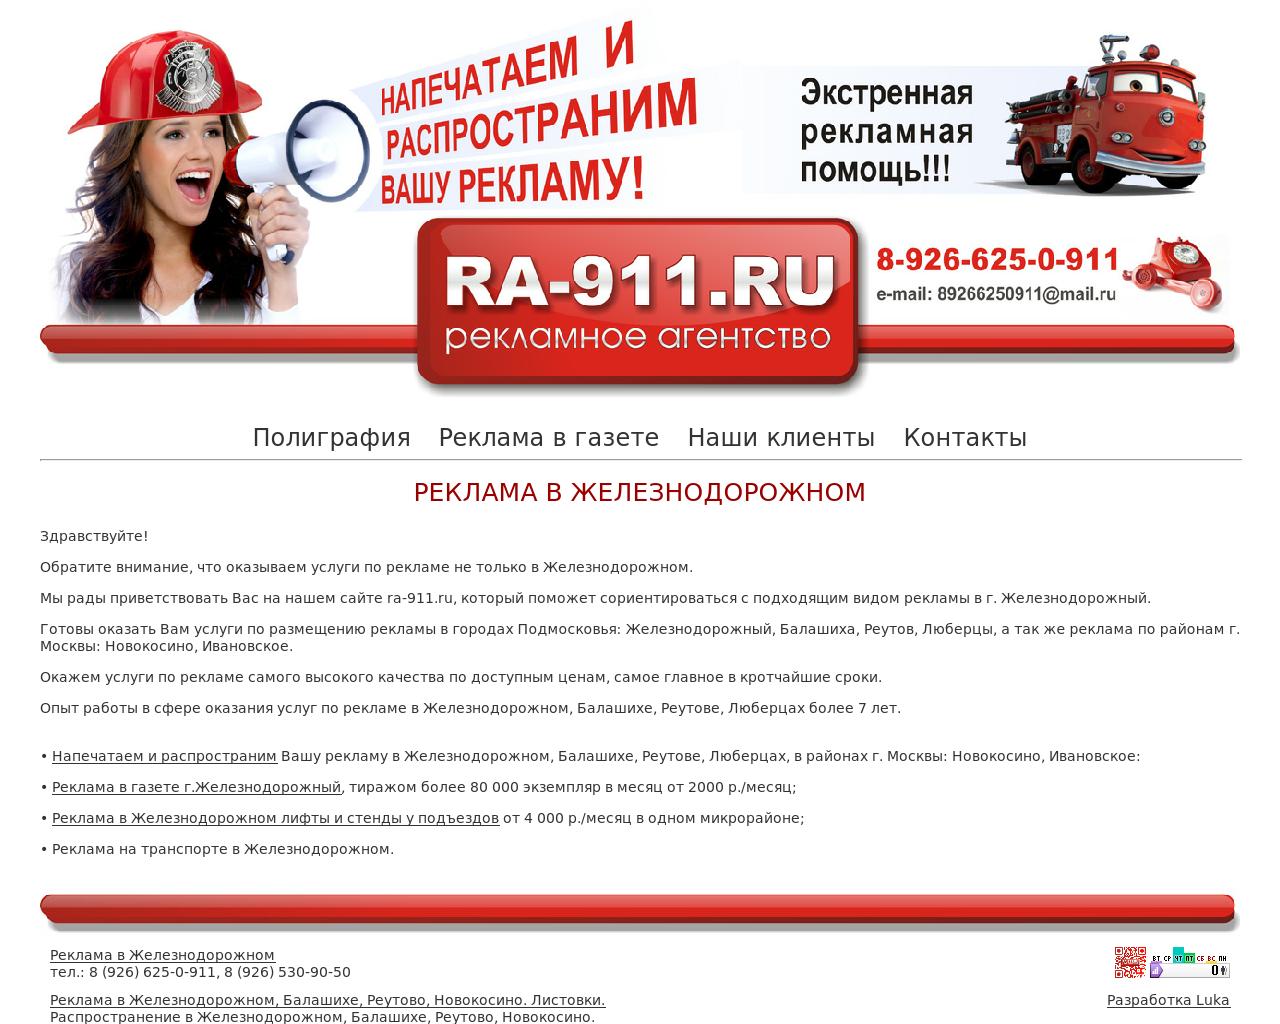 Изображение сайта ra-911.ru в разрешении 1280x1024